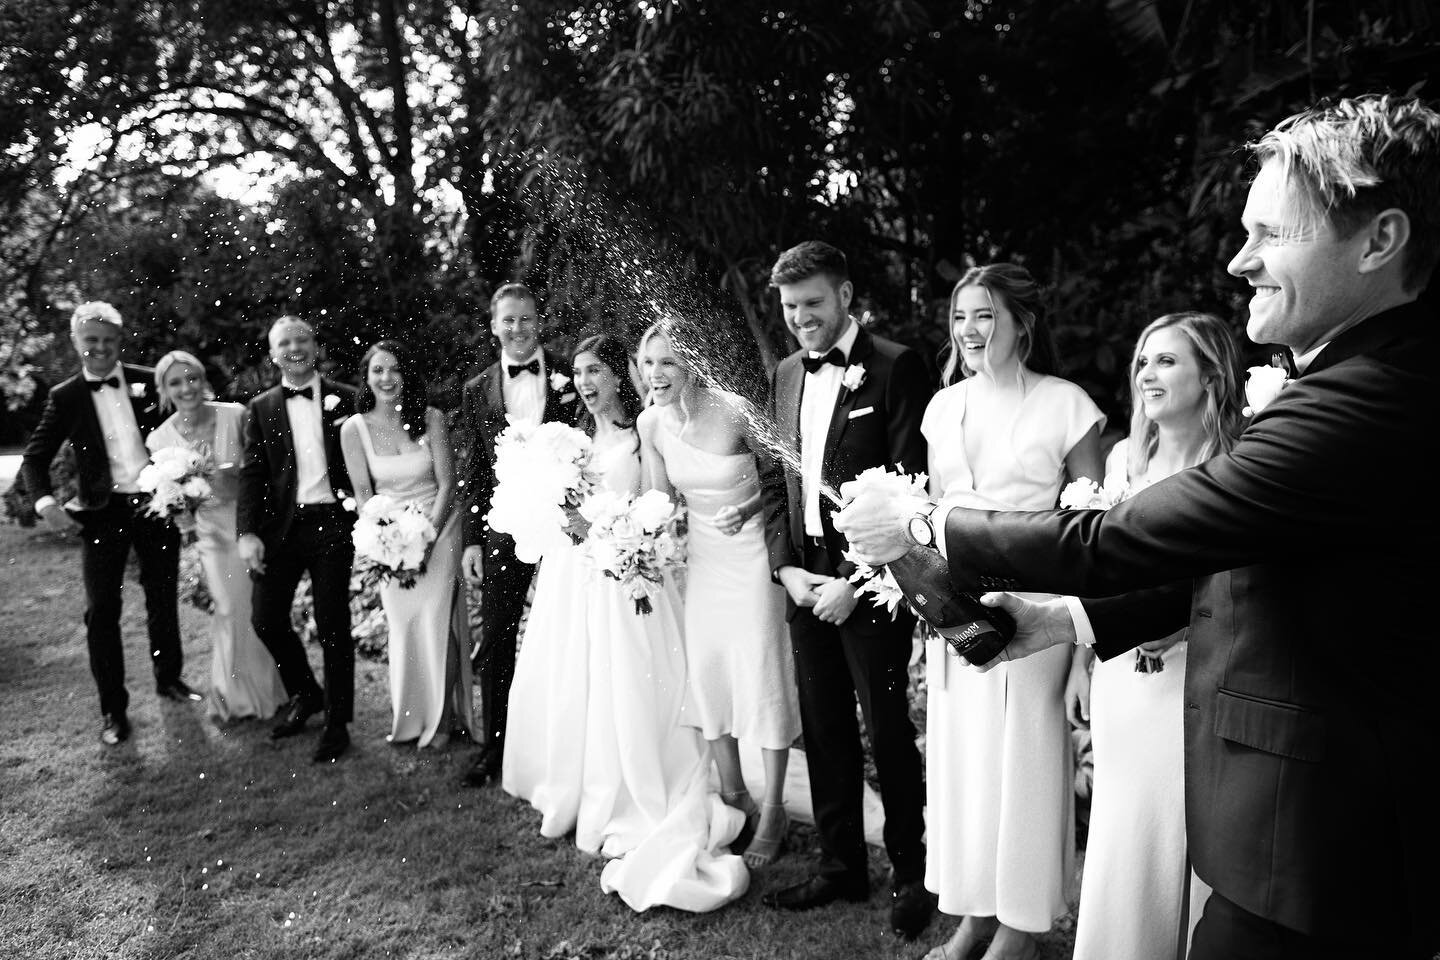 Celebrate love&hellip;

.
.
.
.
.
.

#macedonrangesweddingphotographer
#warrnamboolweddingphotographer
#australianelopement
#elopementphotography
#australianweddingphotographer
#australianwedding
#weddingchicks
#melbournephotographer
#melbourneweddin